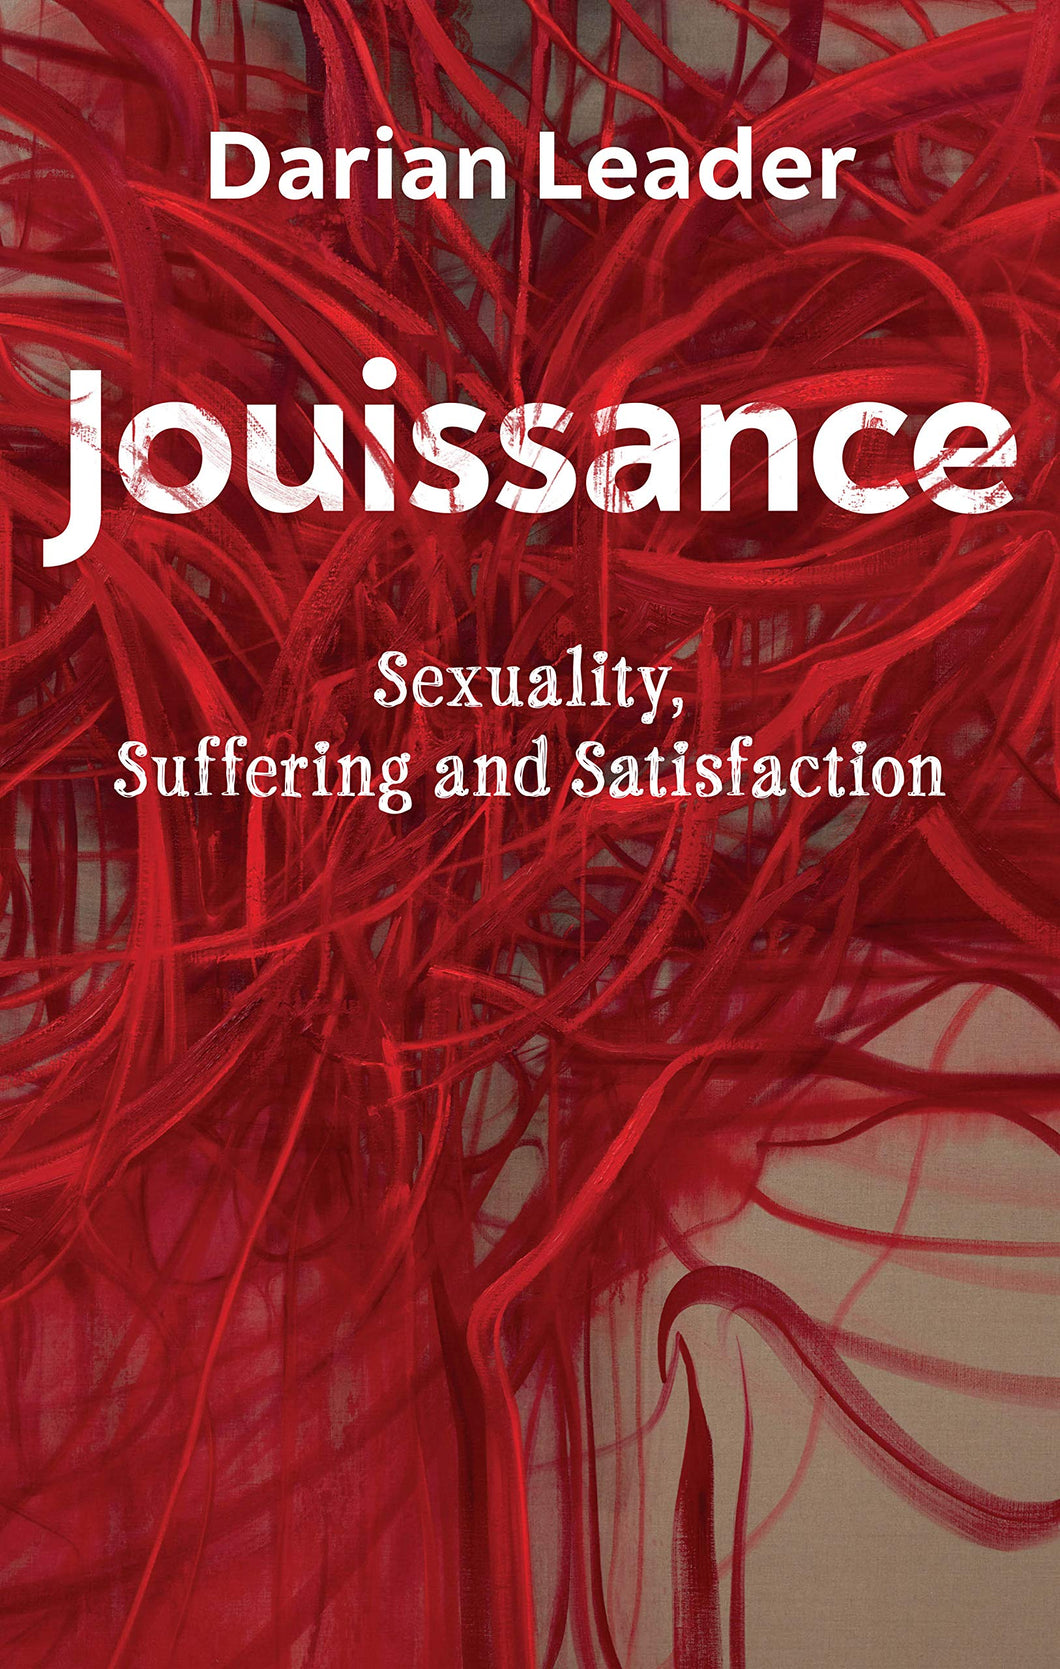 Jouissance : Sexuality, Suffering and Satisfaction ร้านหนังสือและสิ่งของ เป็นร้านหนังสือภาษาอังกฤษหายาก และร้านกาแฟ หรือ บุ๊คคาเฟ่ ตั้งอยู่สุขุมวิท กรุงเทพ